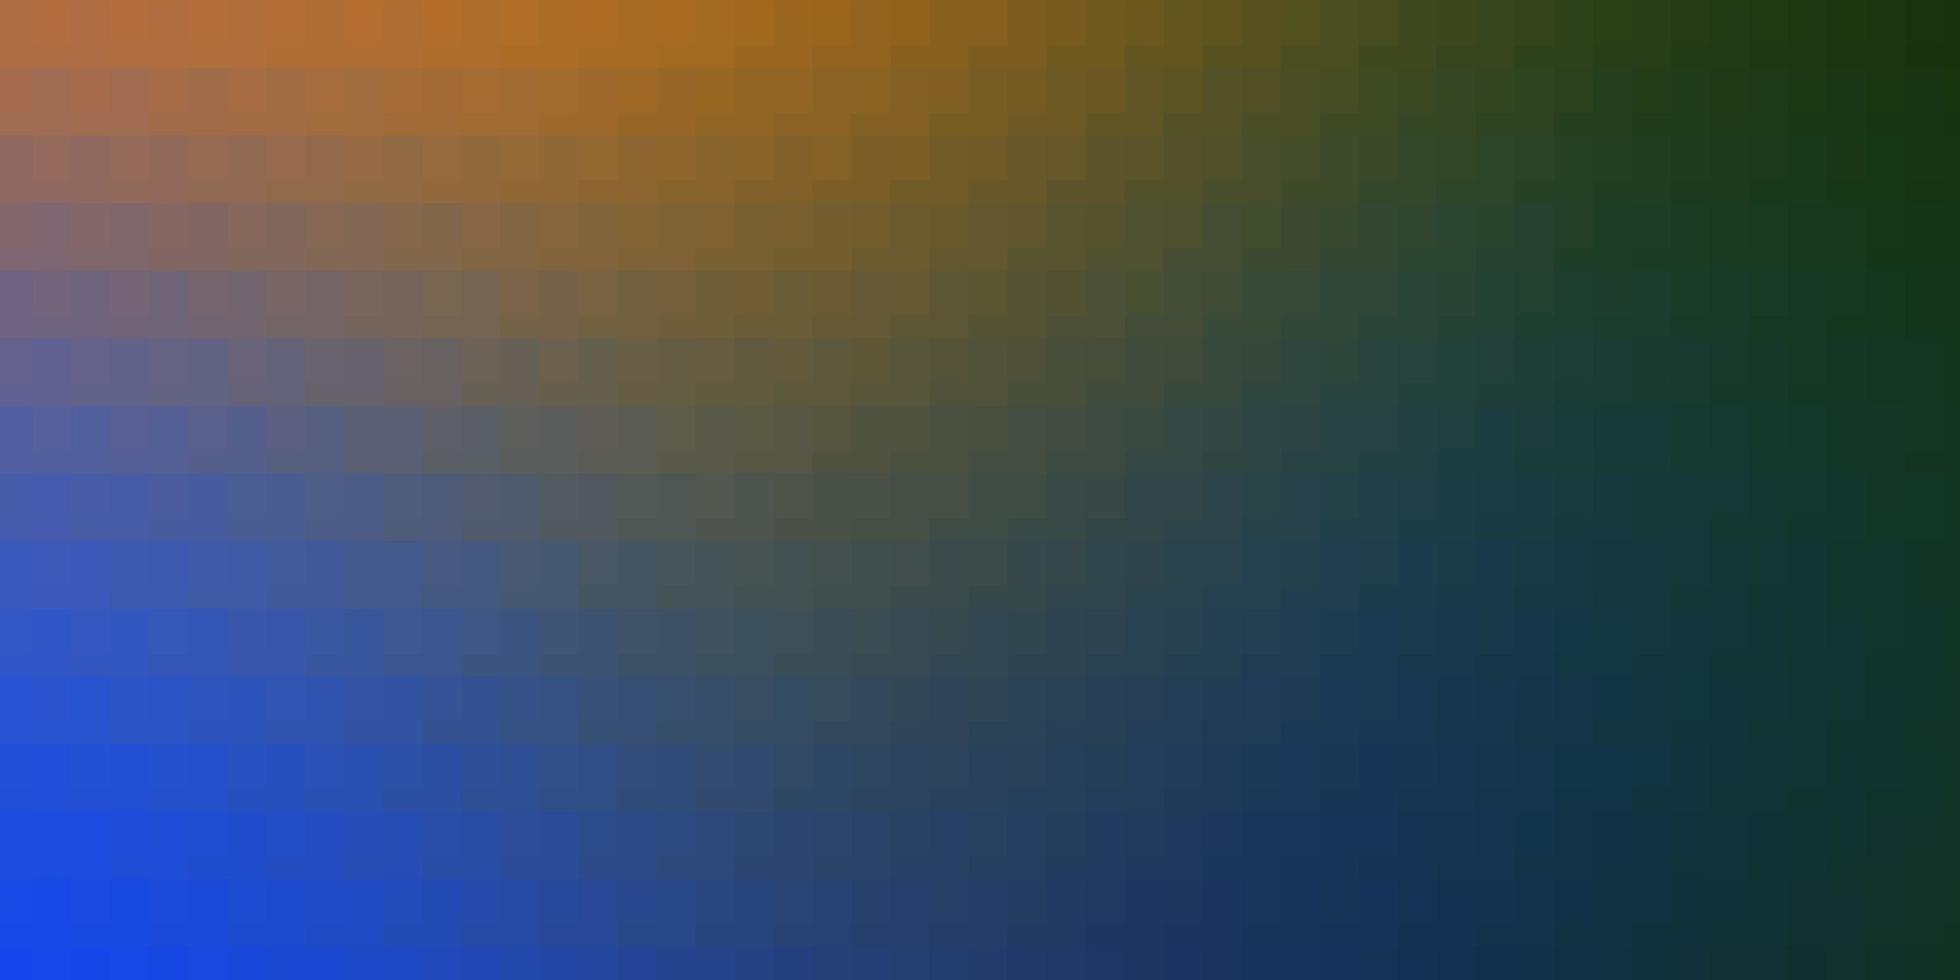 ljusblå, gul bakgrund med rektanglar. vektor